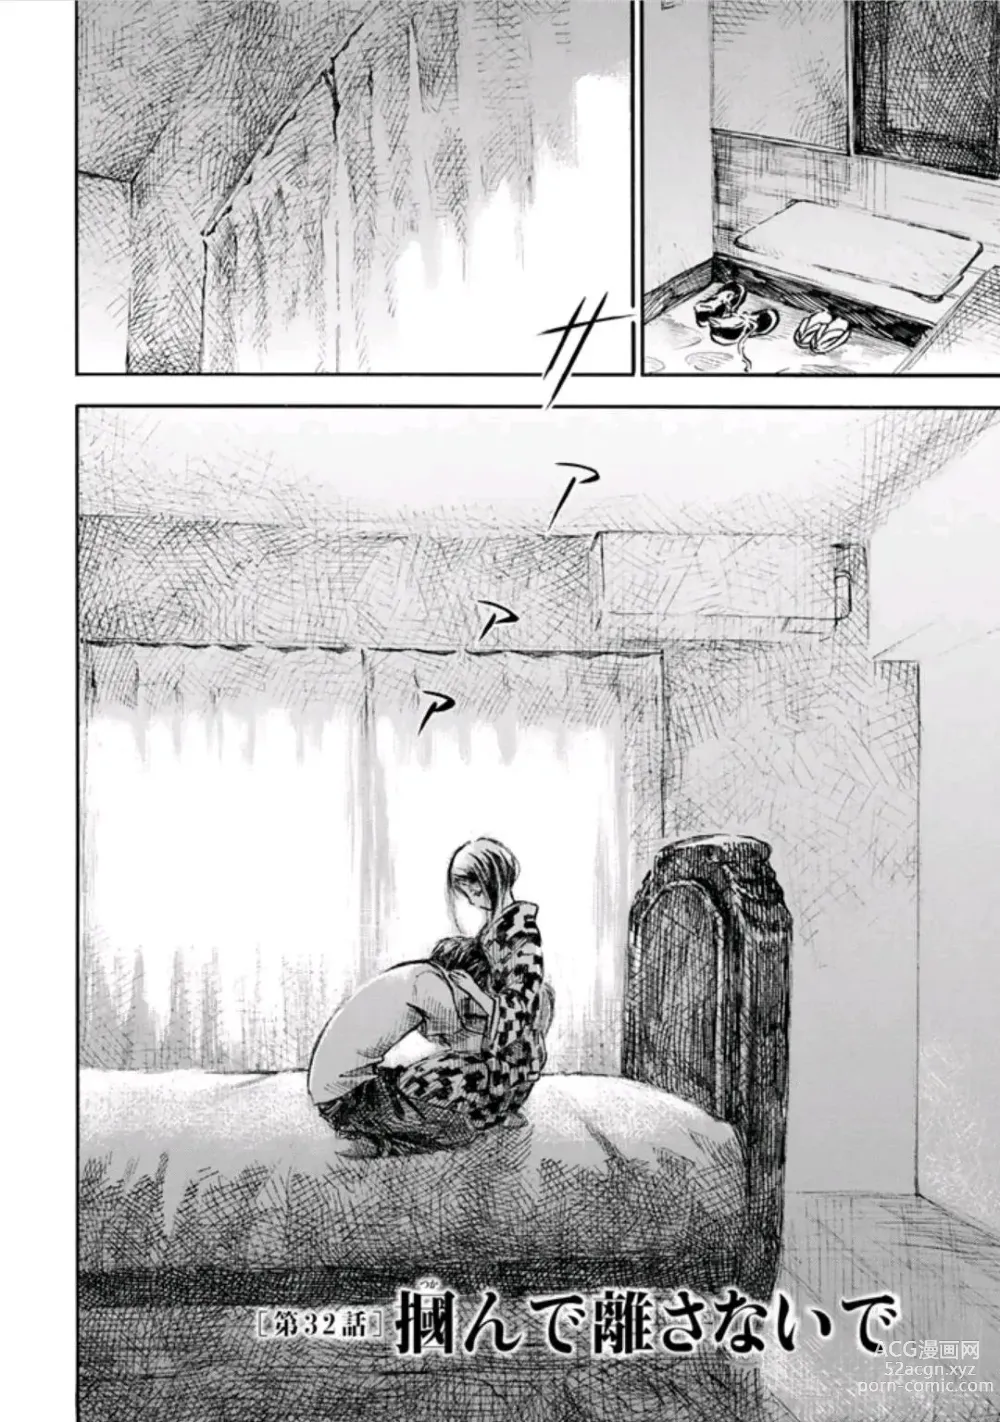 Page 72 of manga Natsu No Zenjitu